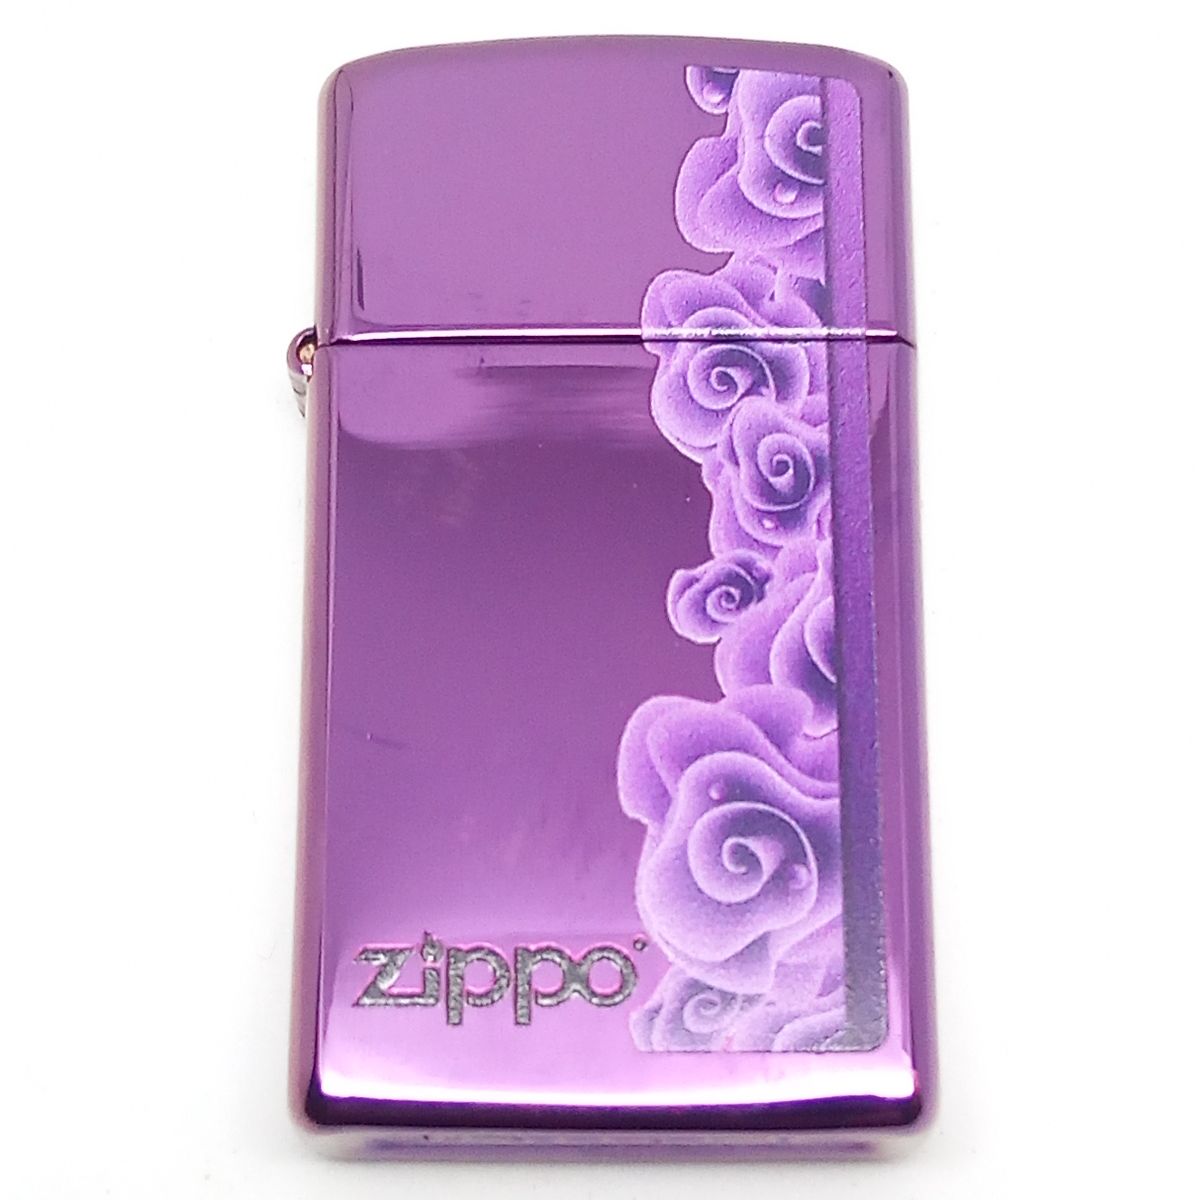 Original Slim Zippo Lighter - Purple Roses - Zippo Lighter fra Zippo hos The Prince Webshop